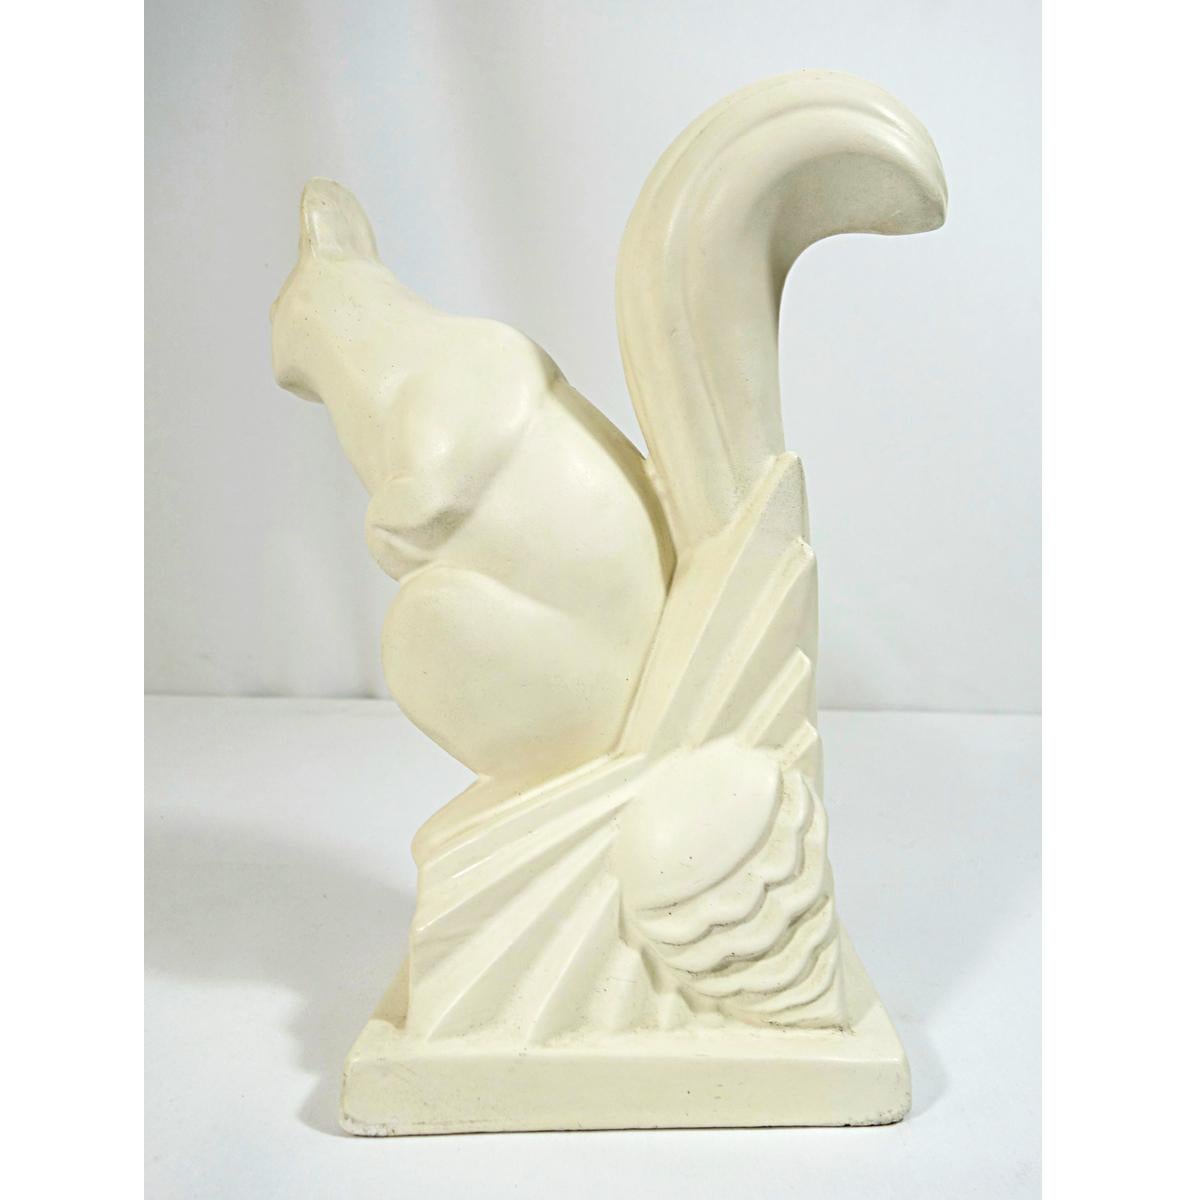 ceramic squirrel figurine